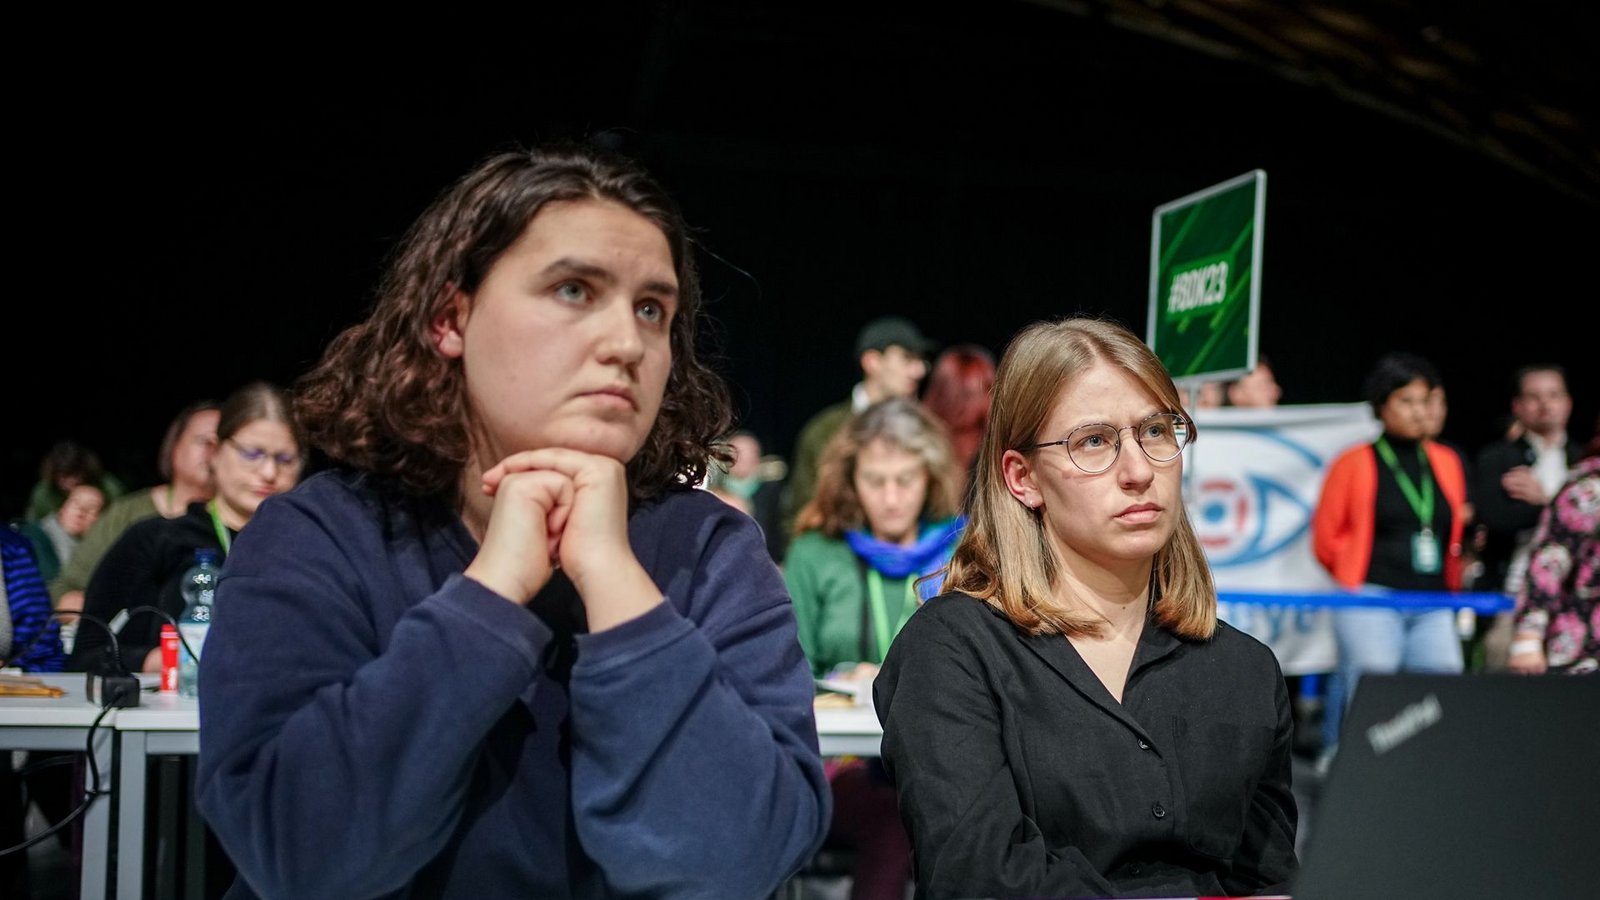 Die Grüne Jugend ist von ihrer Partei enttäuscht.Foto: Kay Nietfeld/dpa/Kay Nietfeld